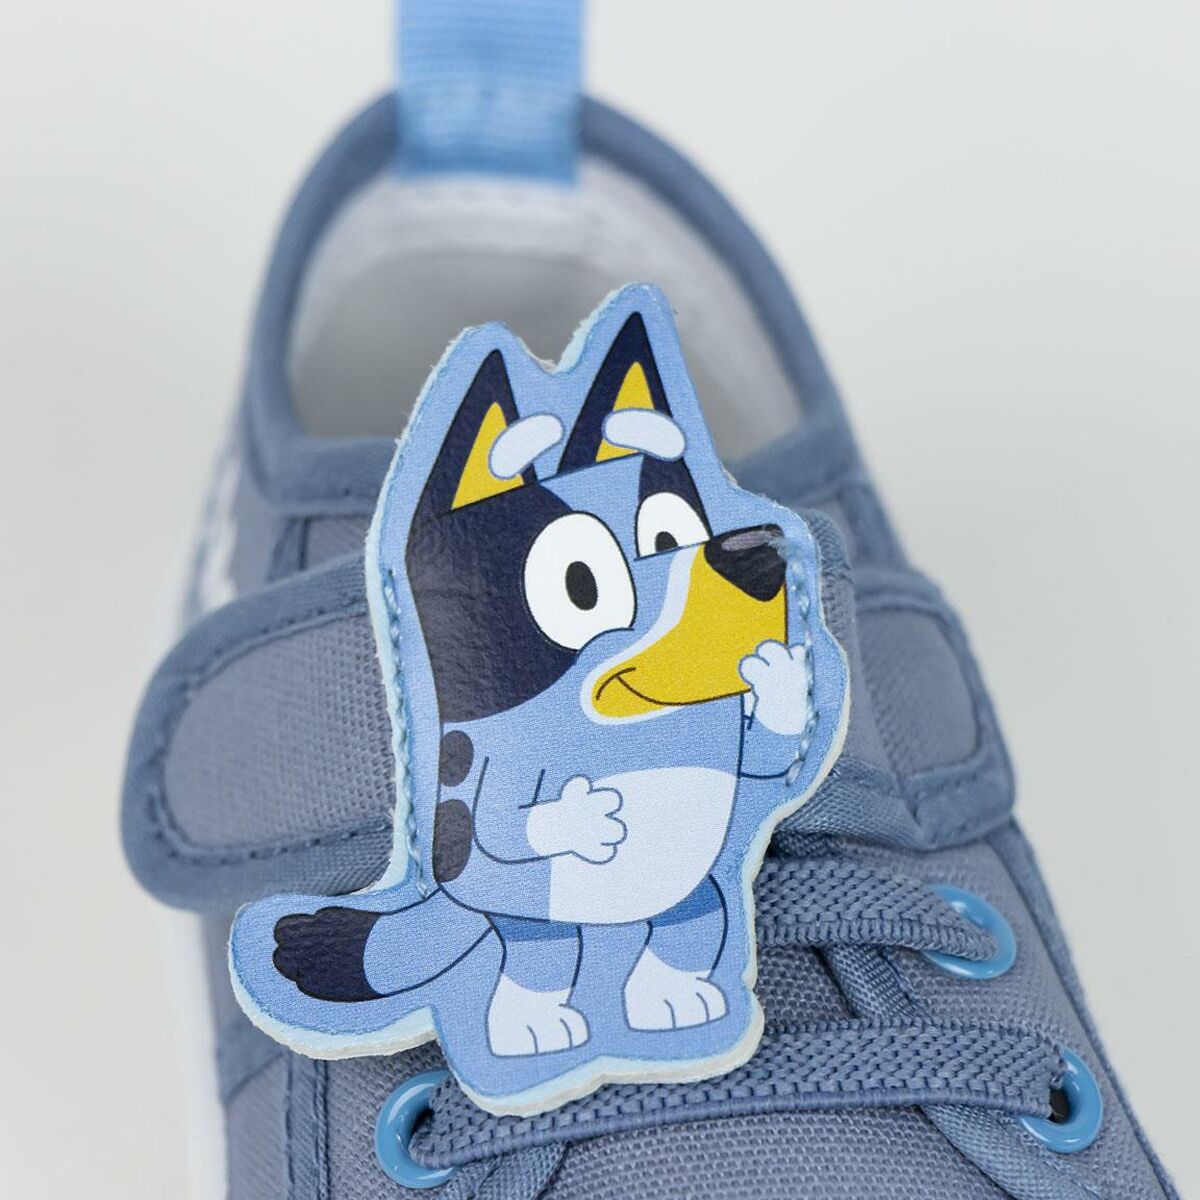 Sportschoenen voor Kinderen Bluey